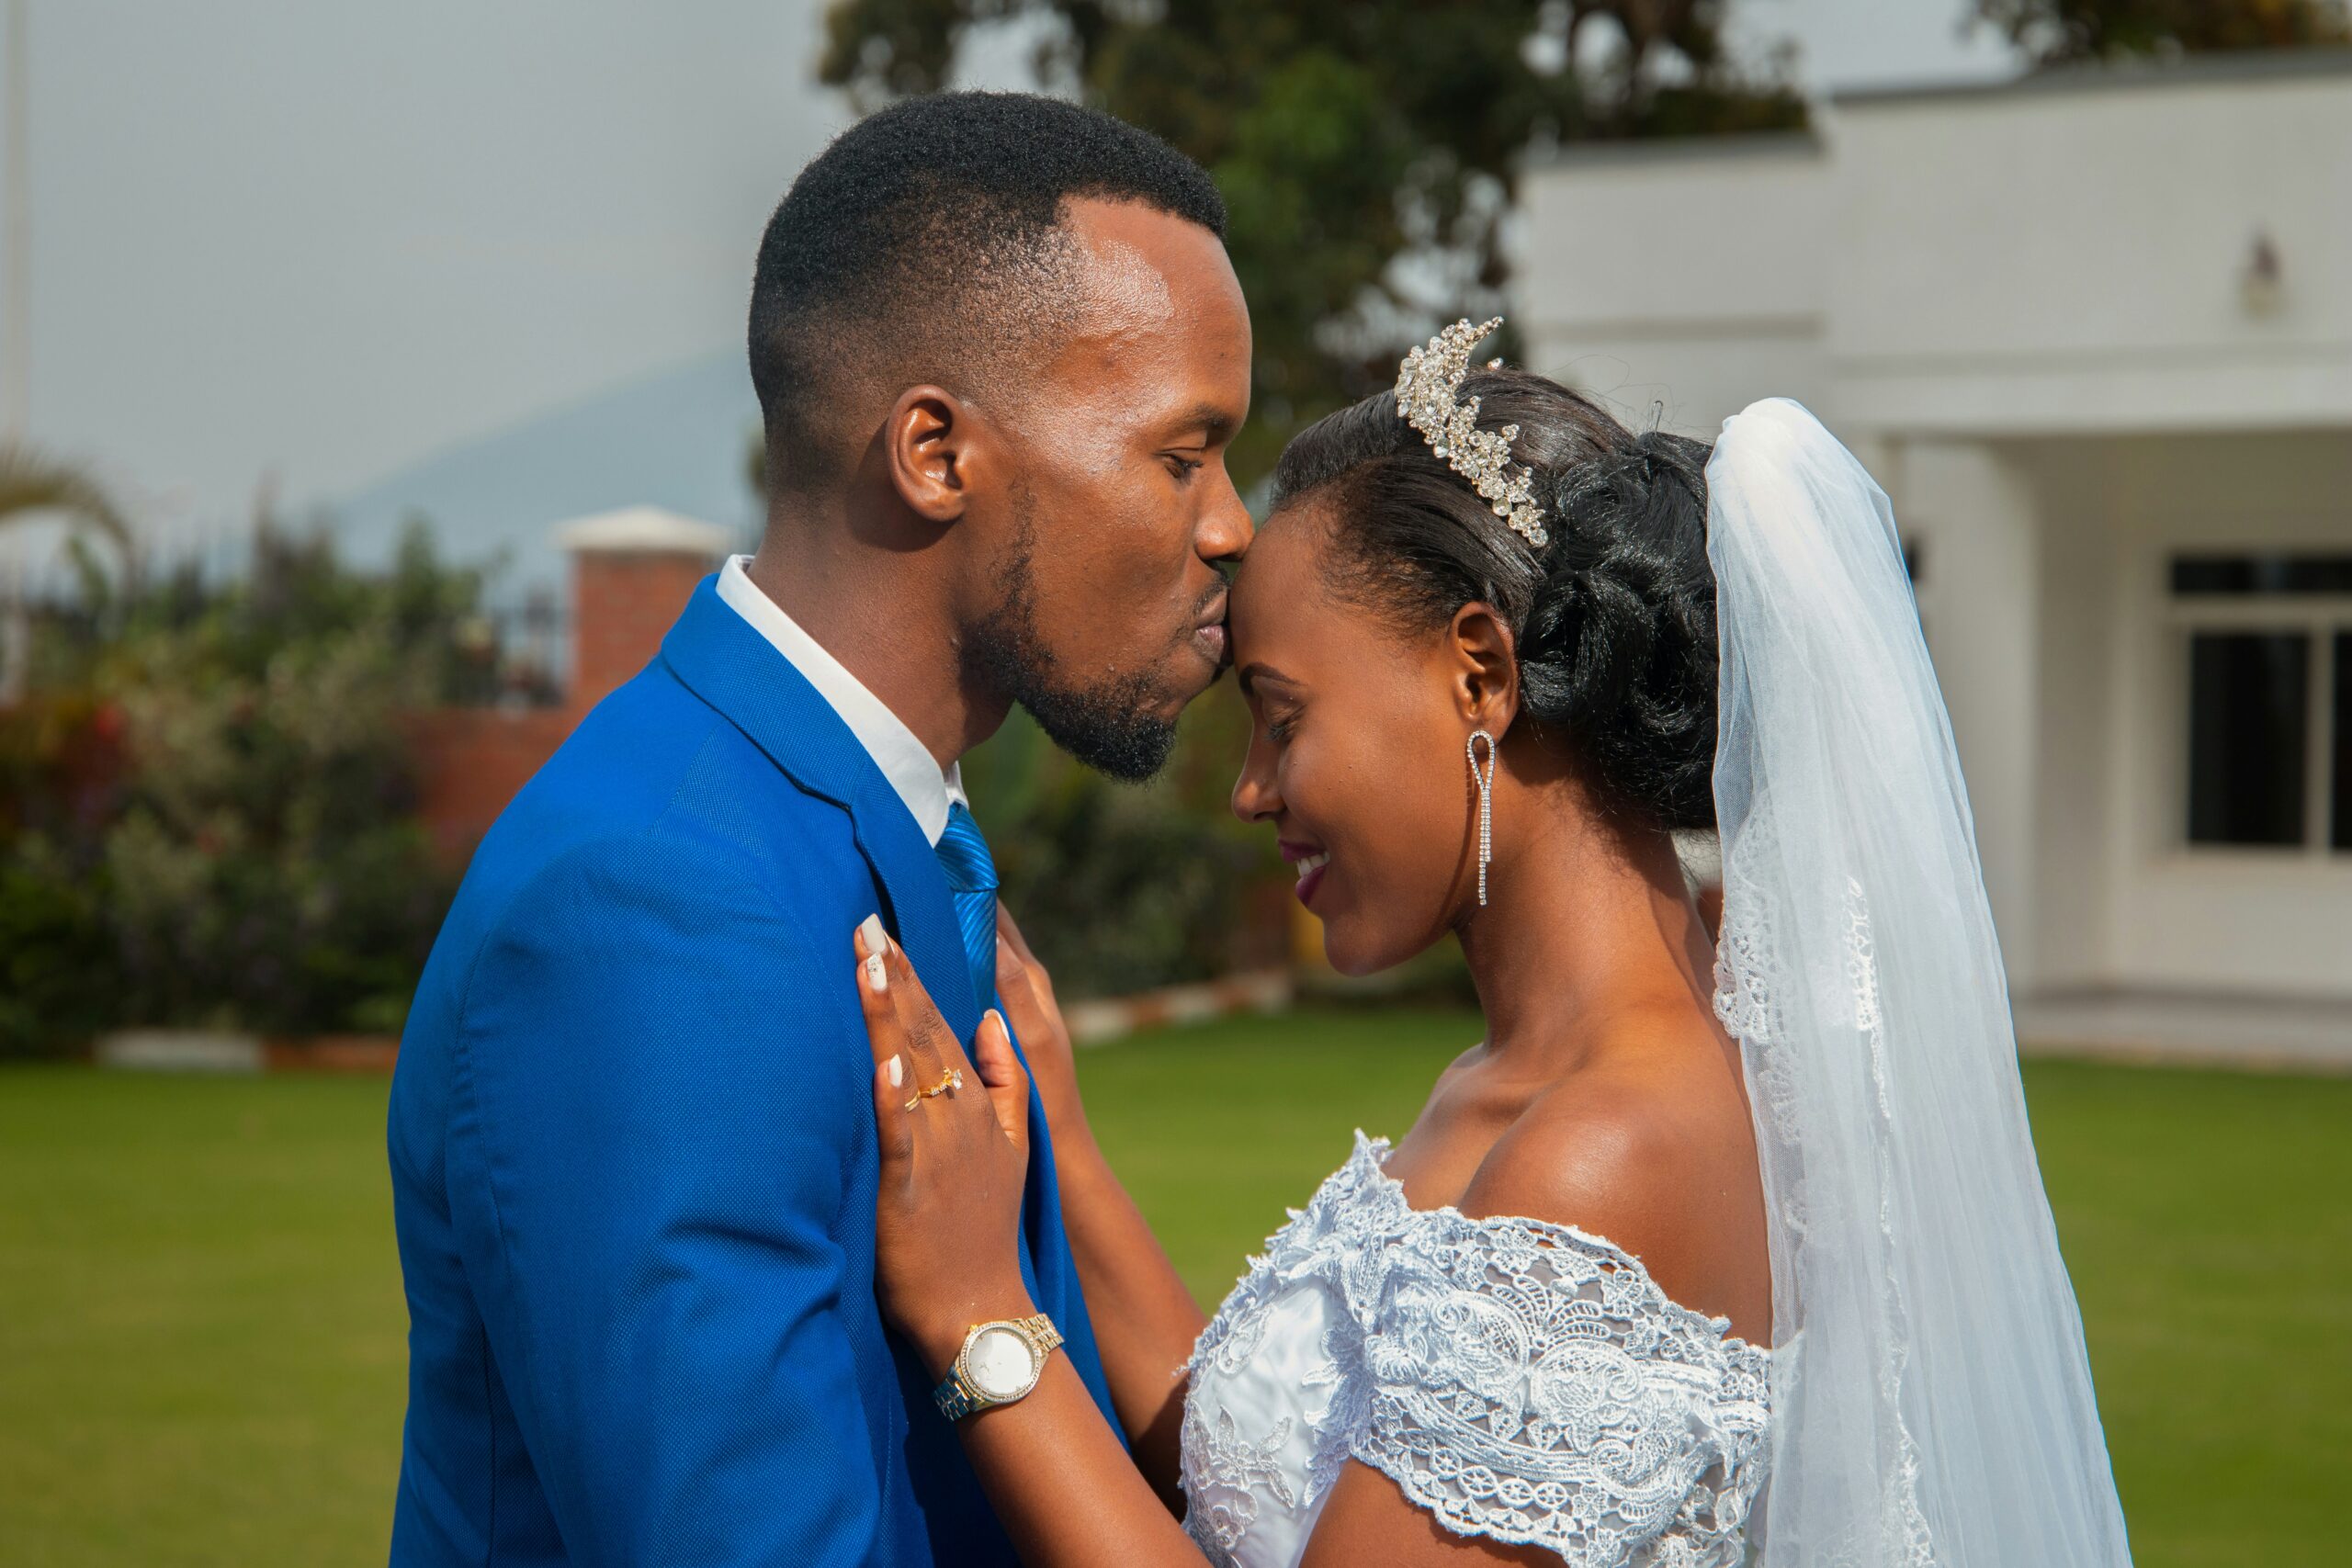 marriage arrangement namboku